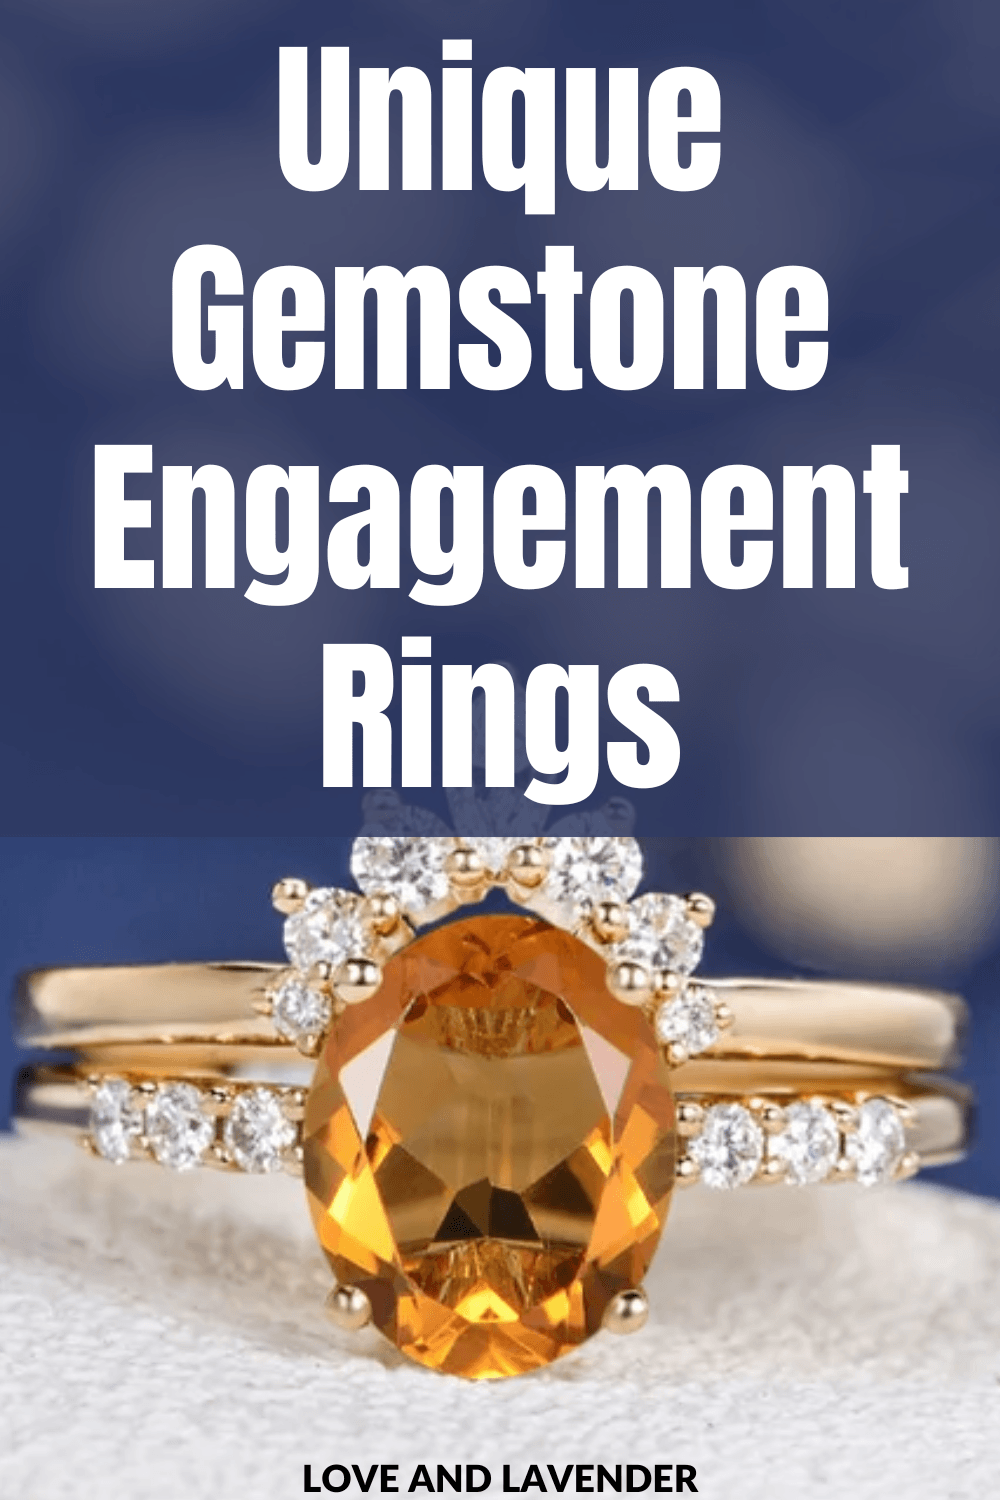 15 Vintage + Unique + Colorful Gemstone Engagement Rings